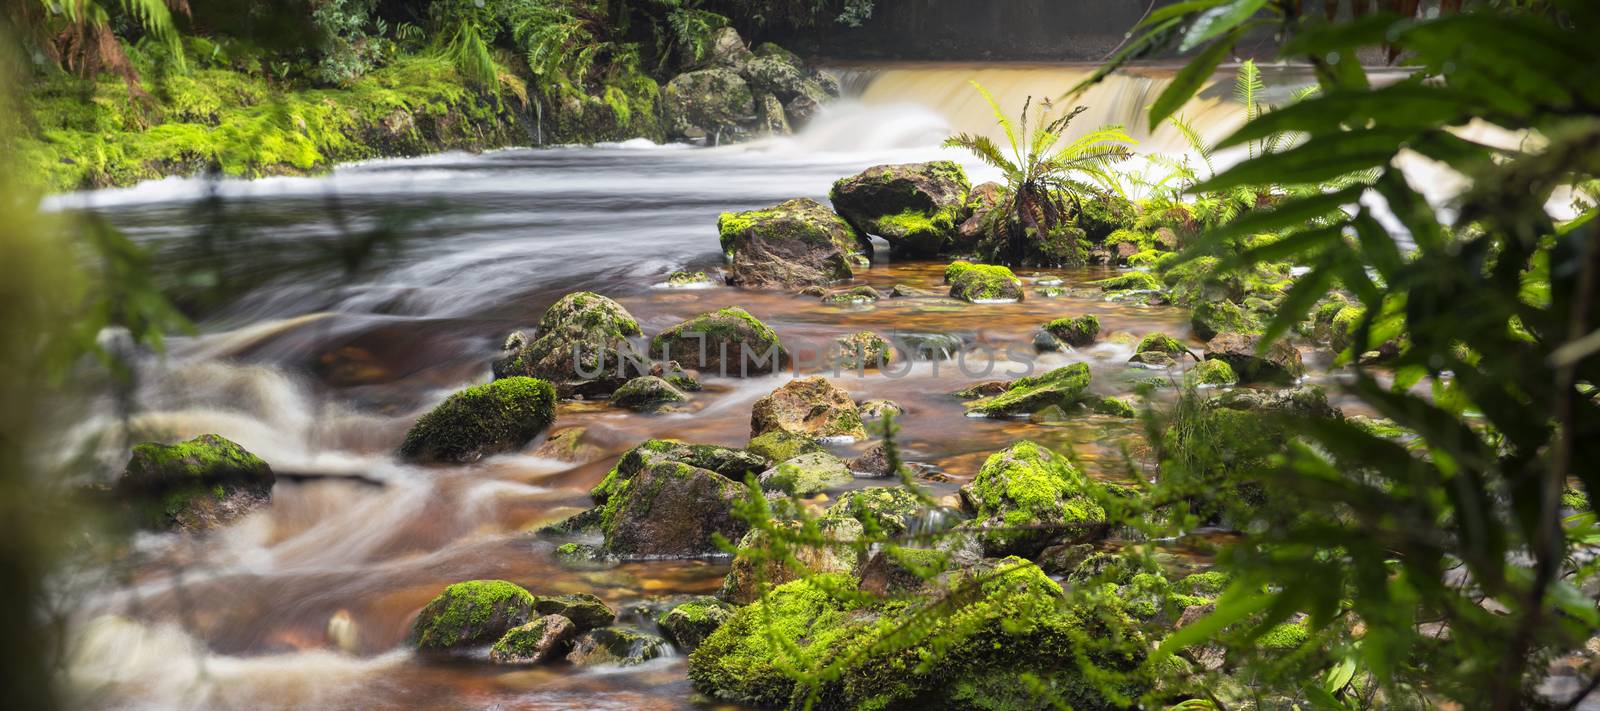 Newell creek is a magnificent fast running stream in Tasmania, Australia